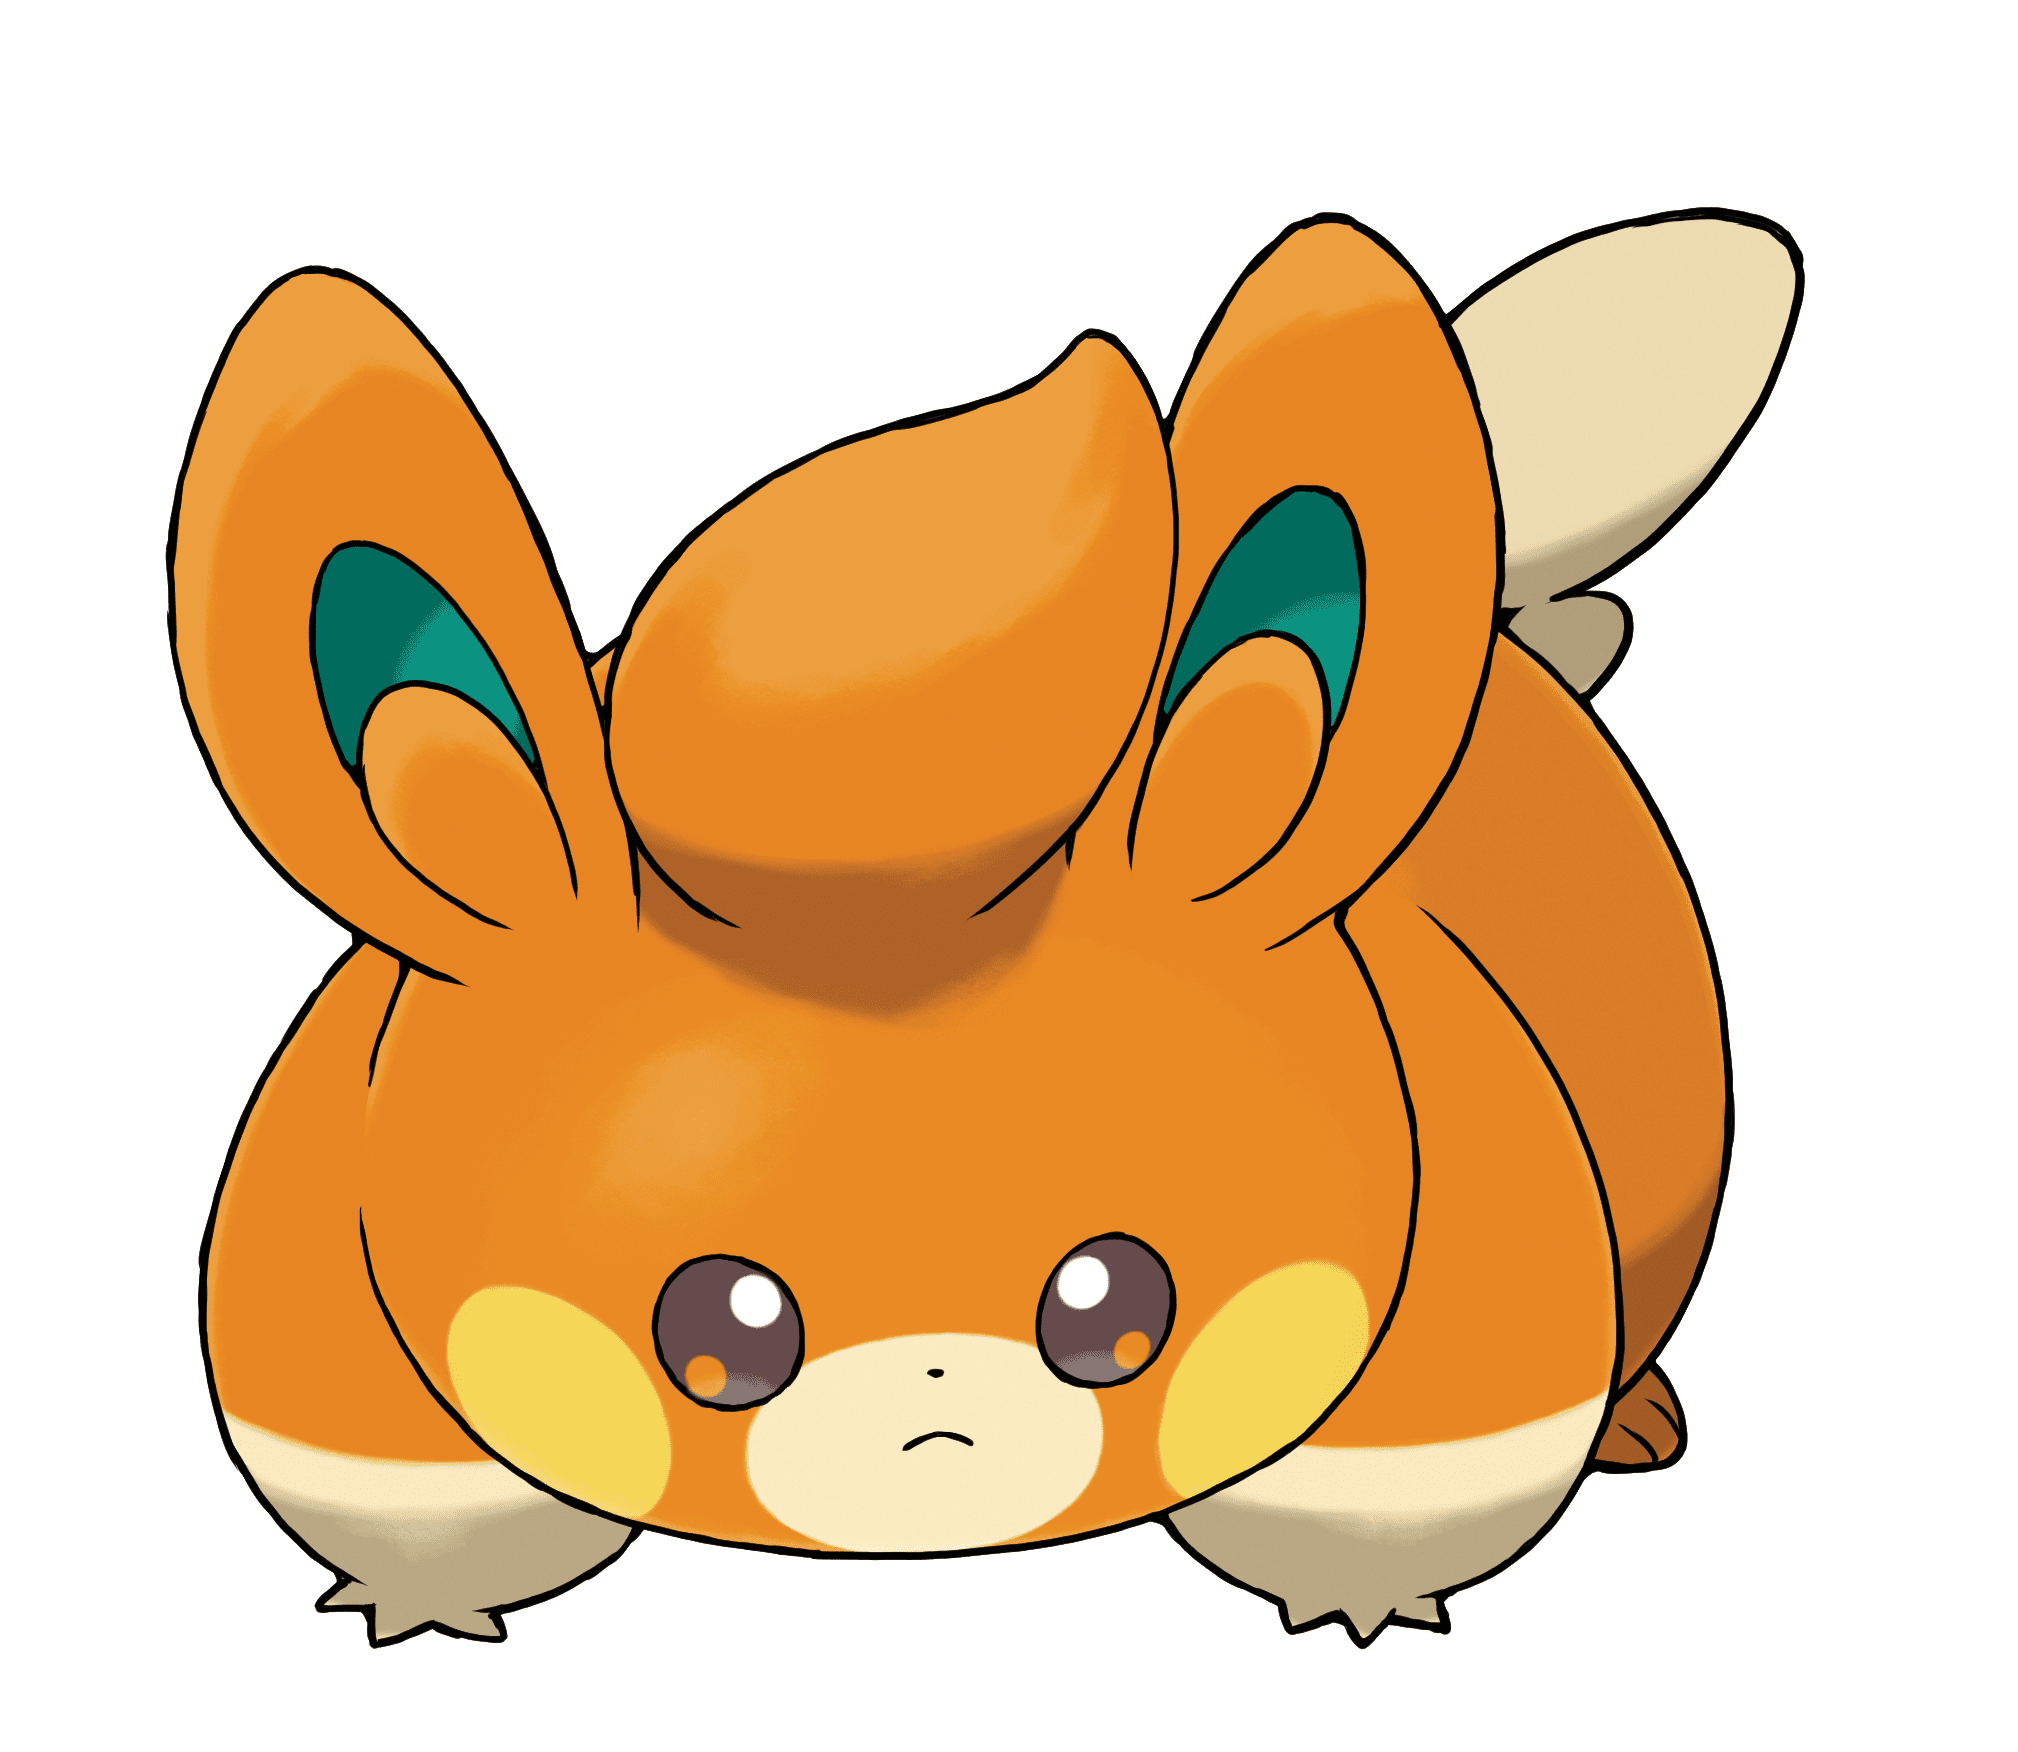 Bonito pato Pokémon do tipo elétrico com olhos vermelhos